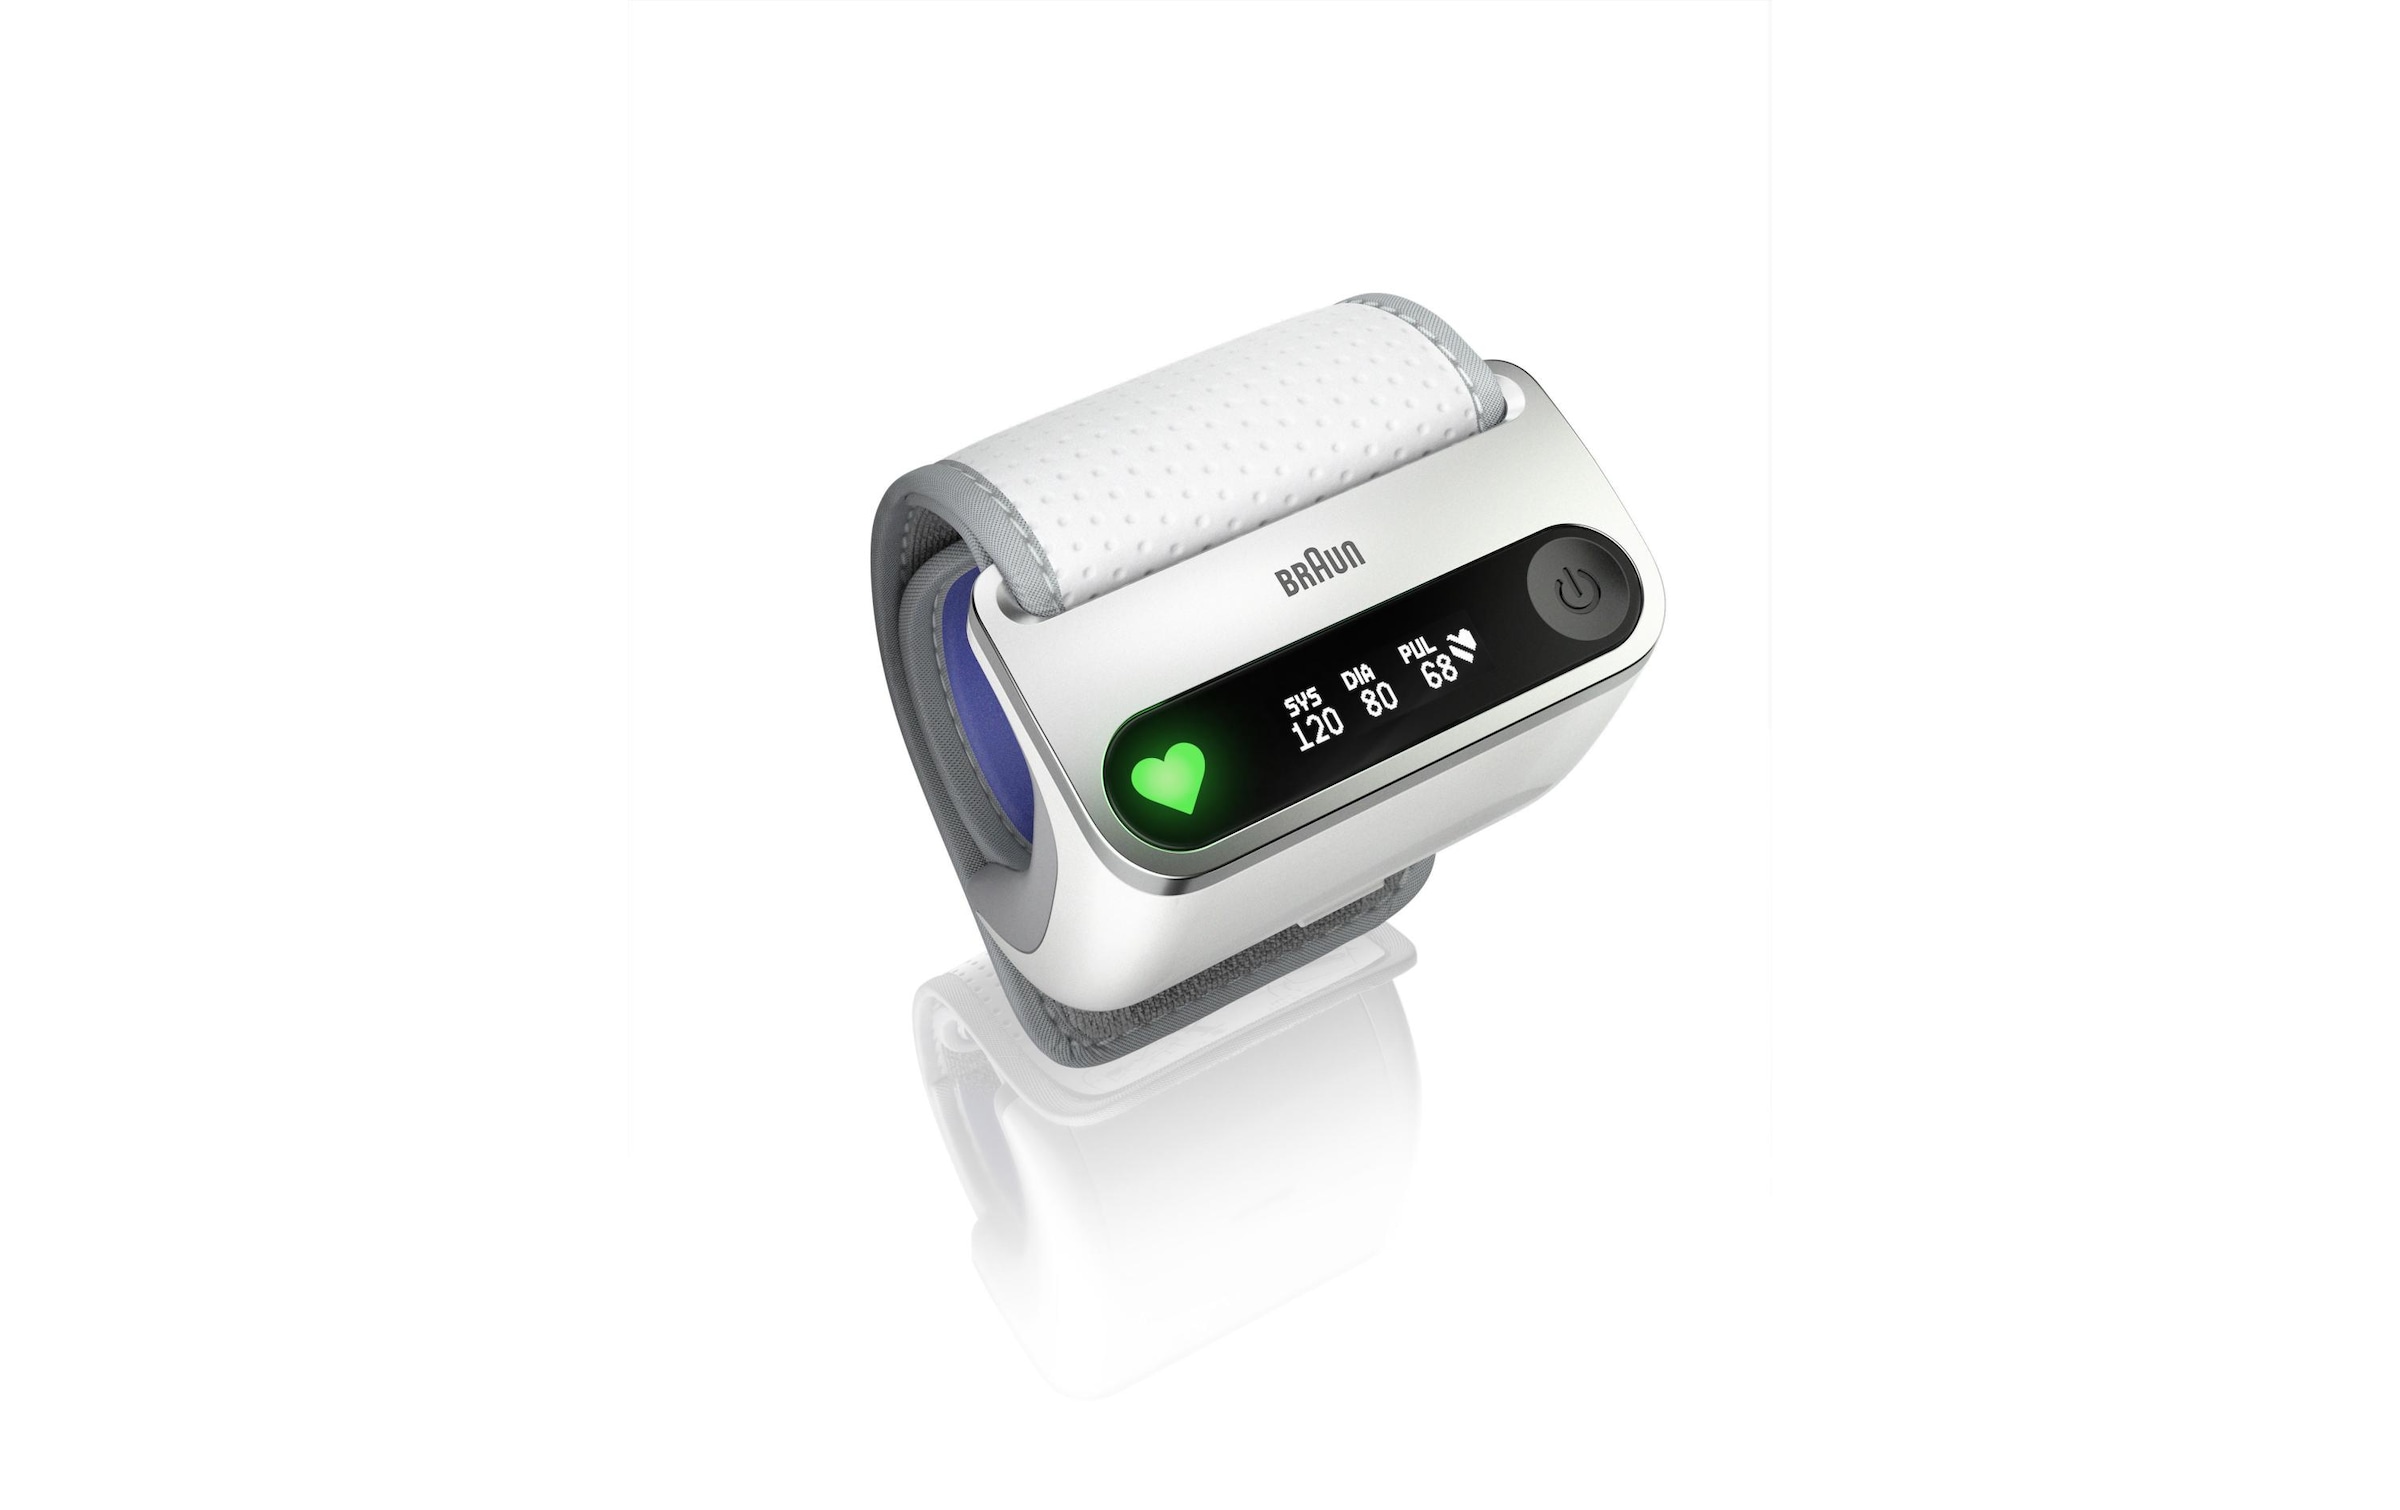 Braun Handgelenk-Blutdruckmessgerät »iCheck 7«, Abschaltautomatik, Arrhythmie-Erkennung, Messergebnis-Einstufung